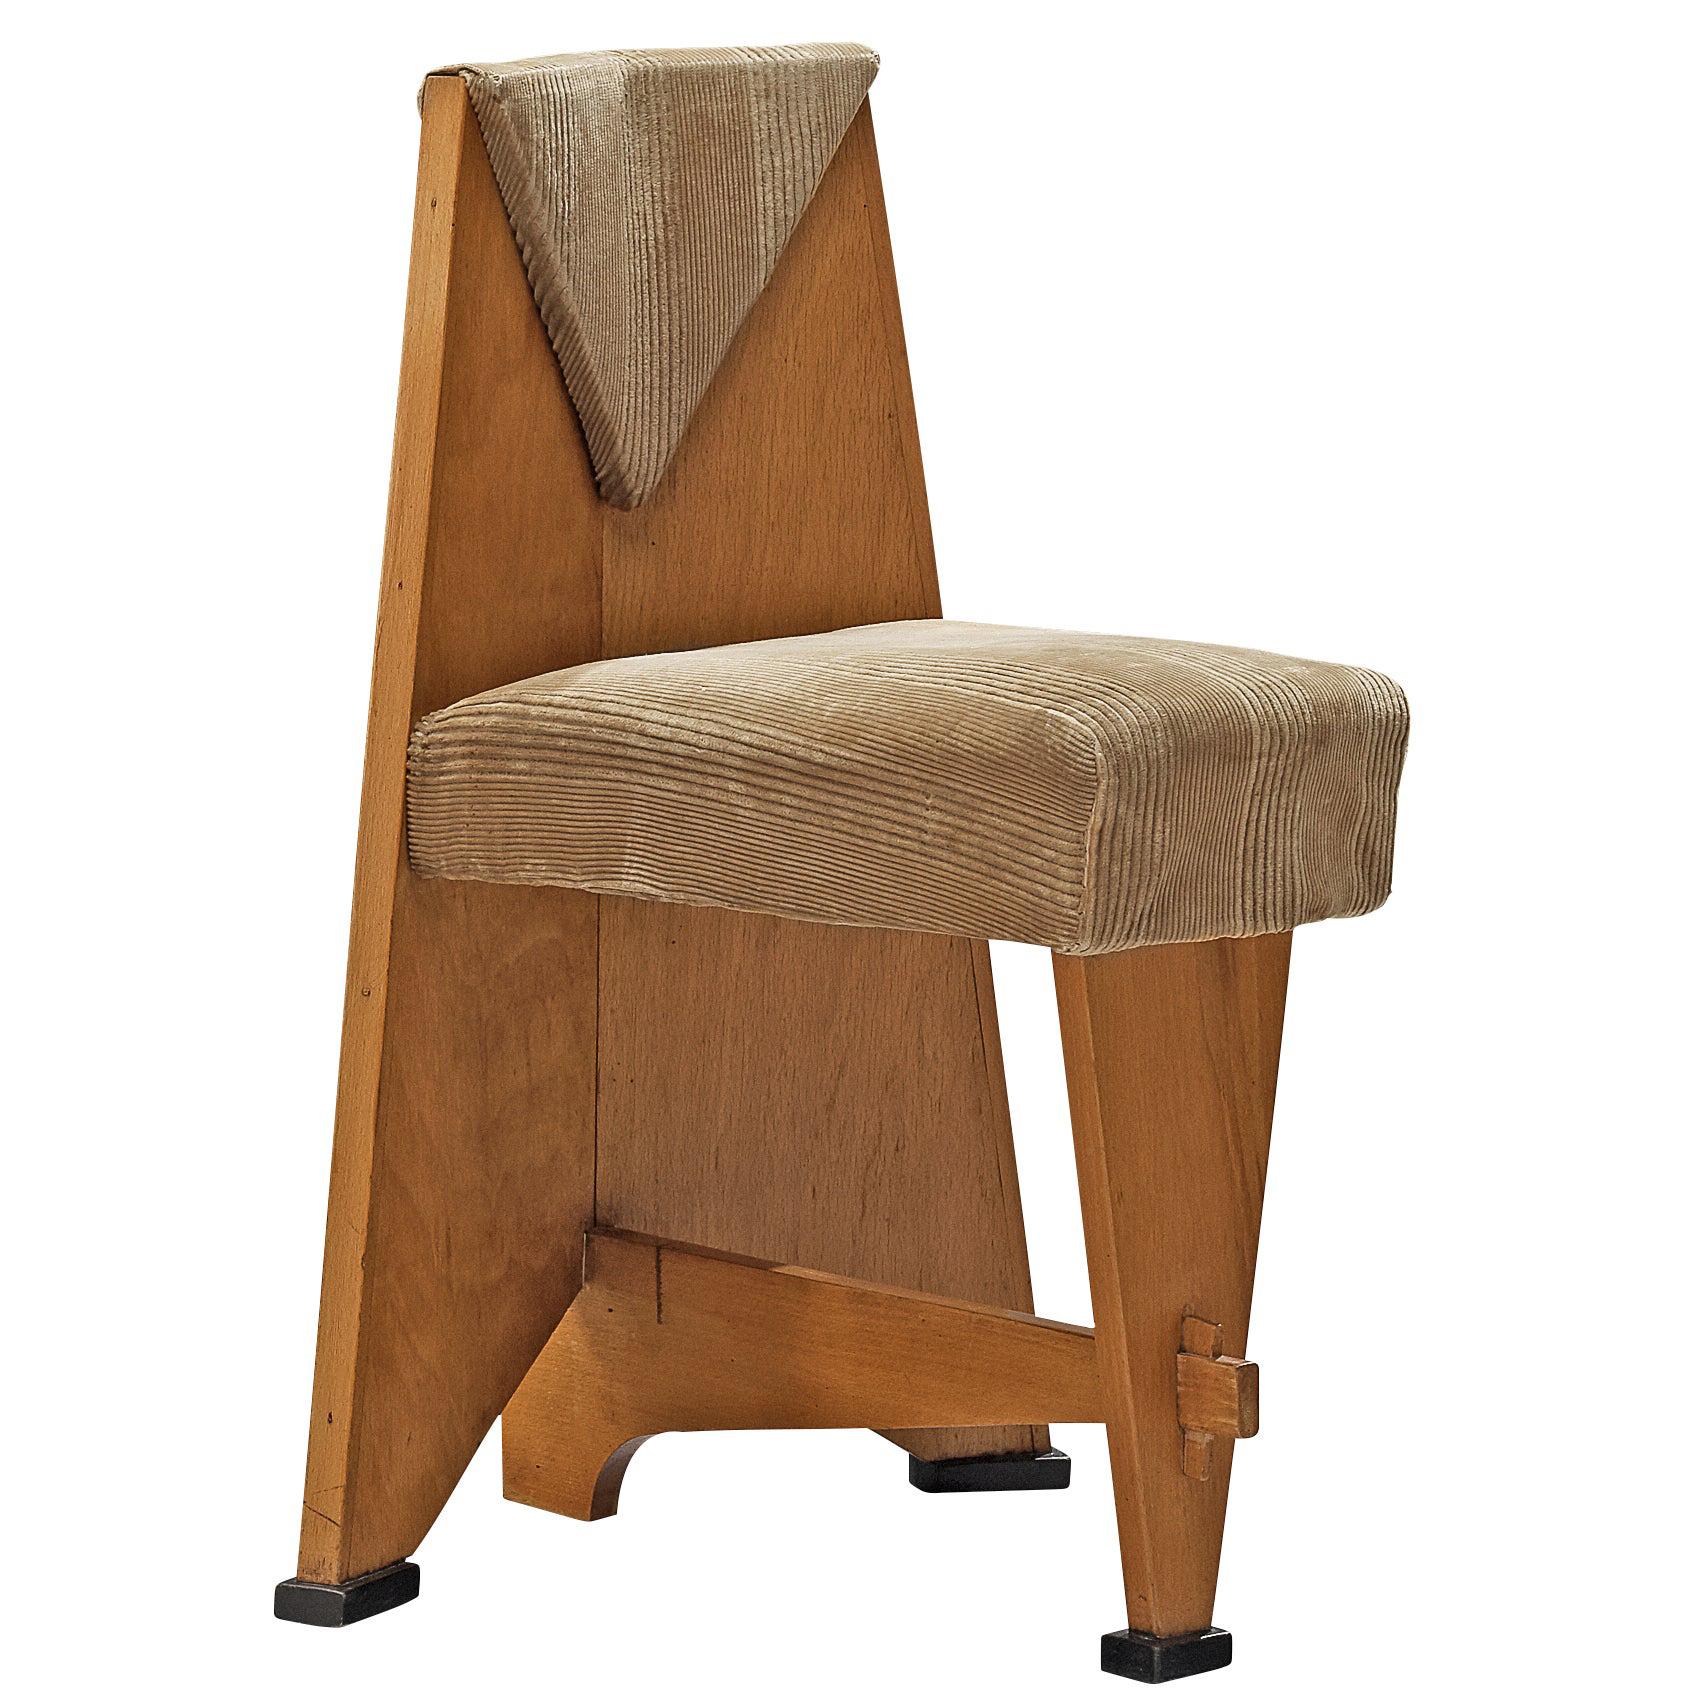 Art Deco Side Chair by Laurens Groen, 1924